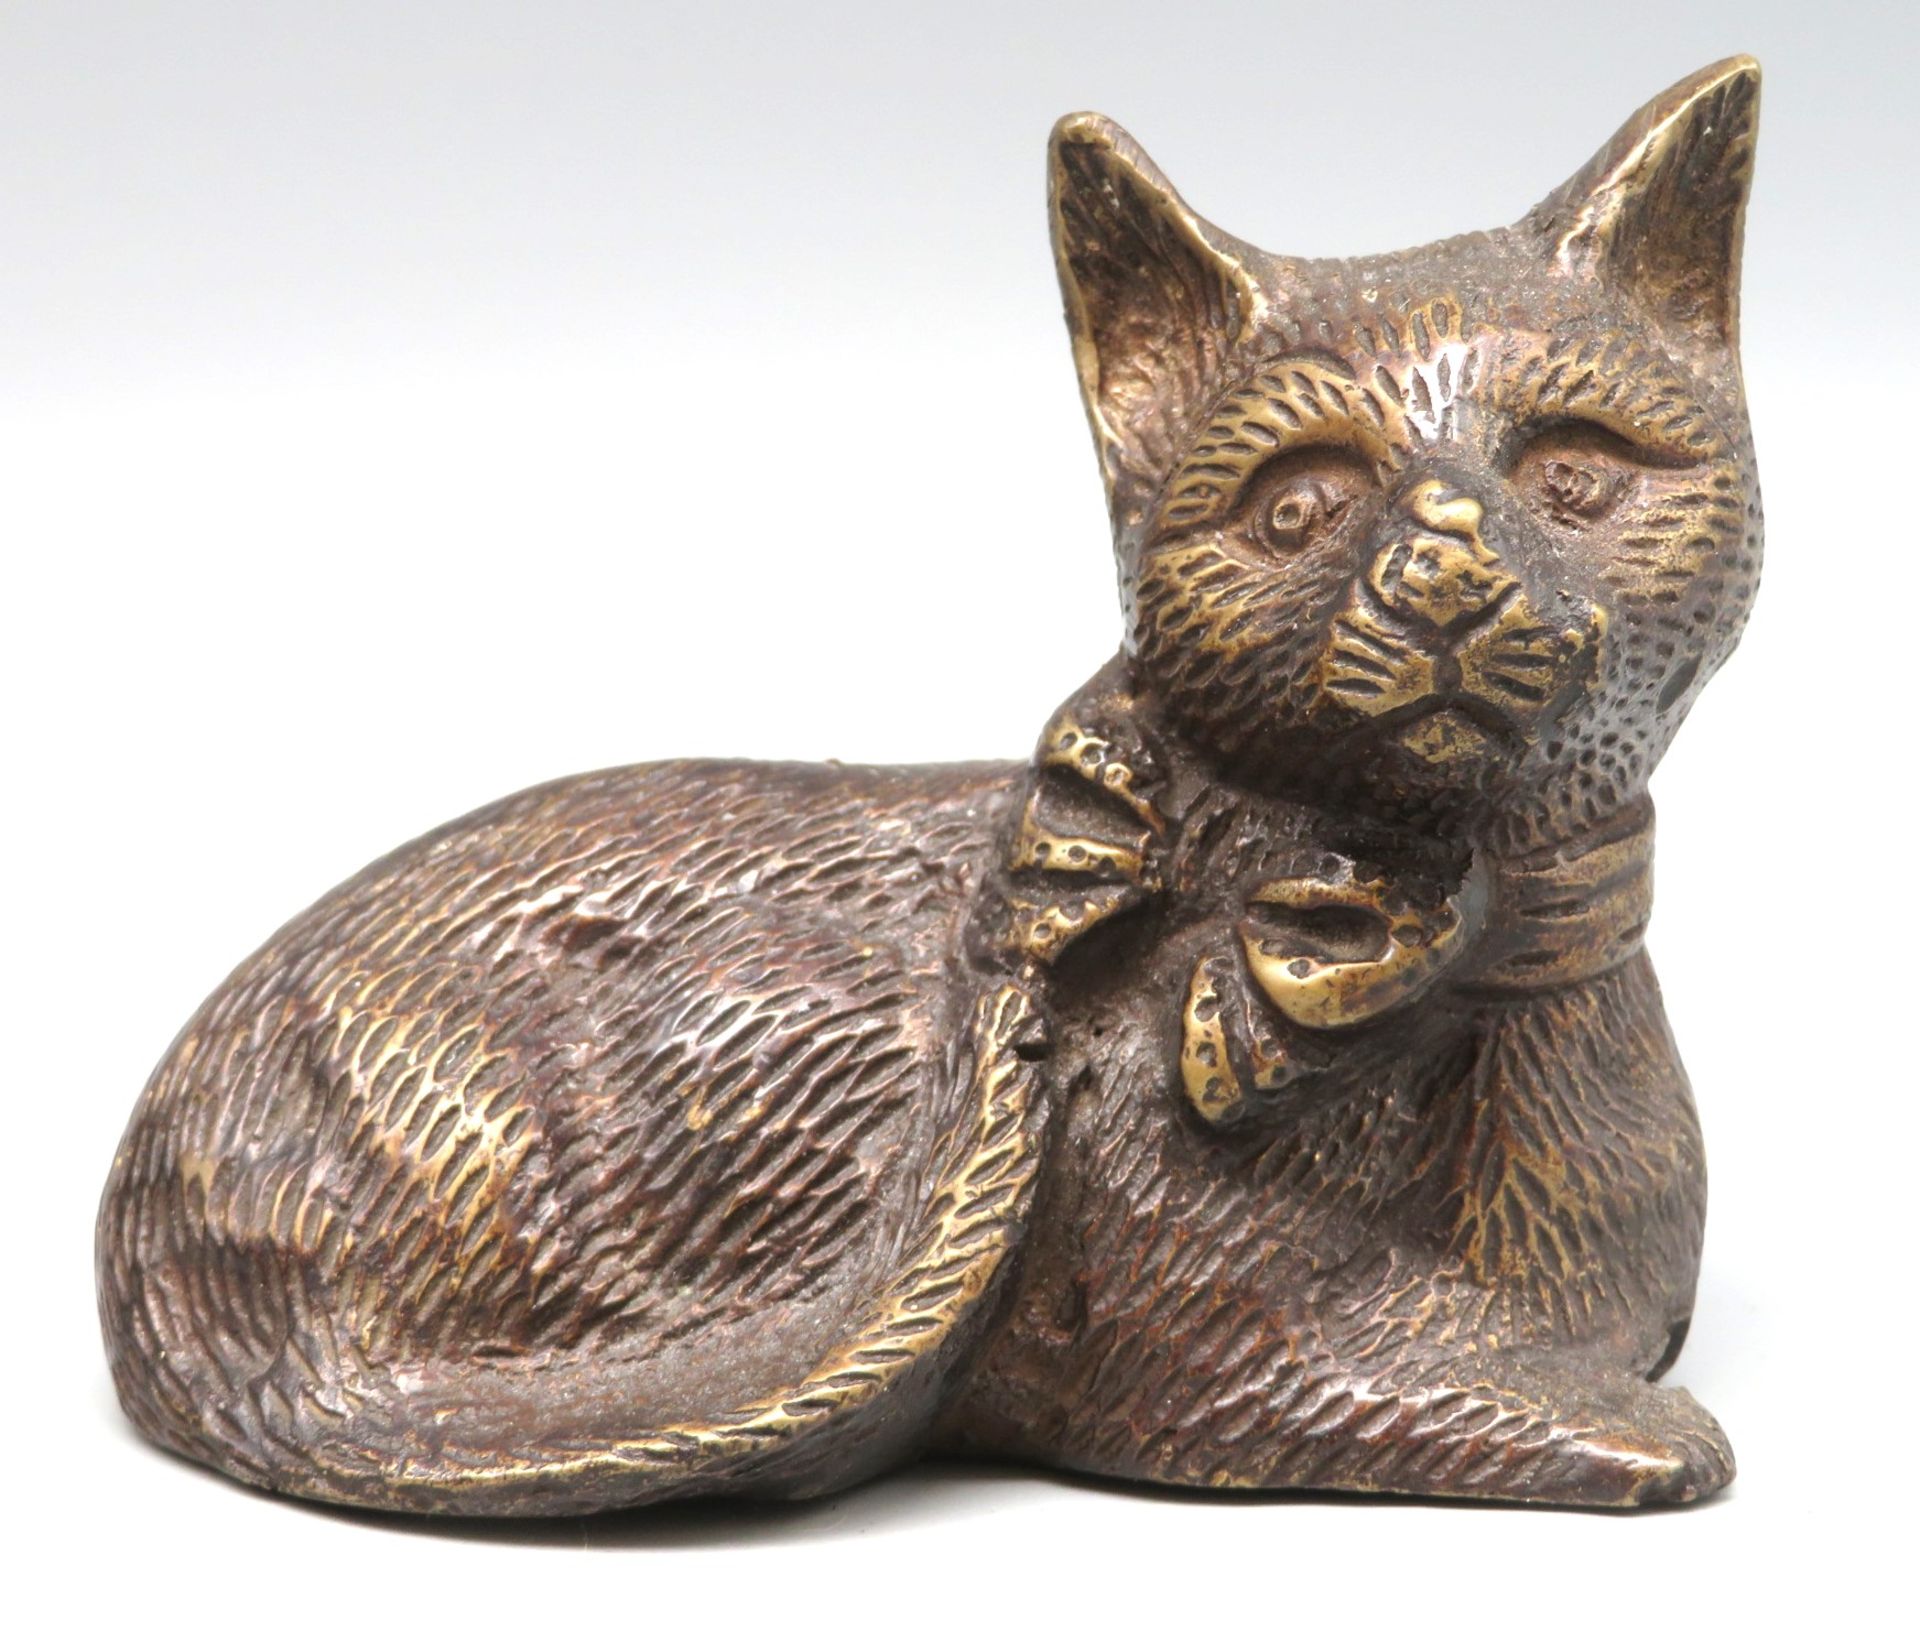 Liegende Katze, Bronze, 8,2 x 9,8 x 5,8 cm.